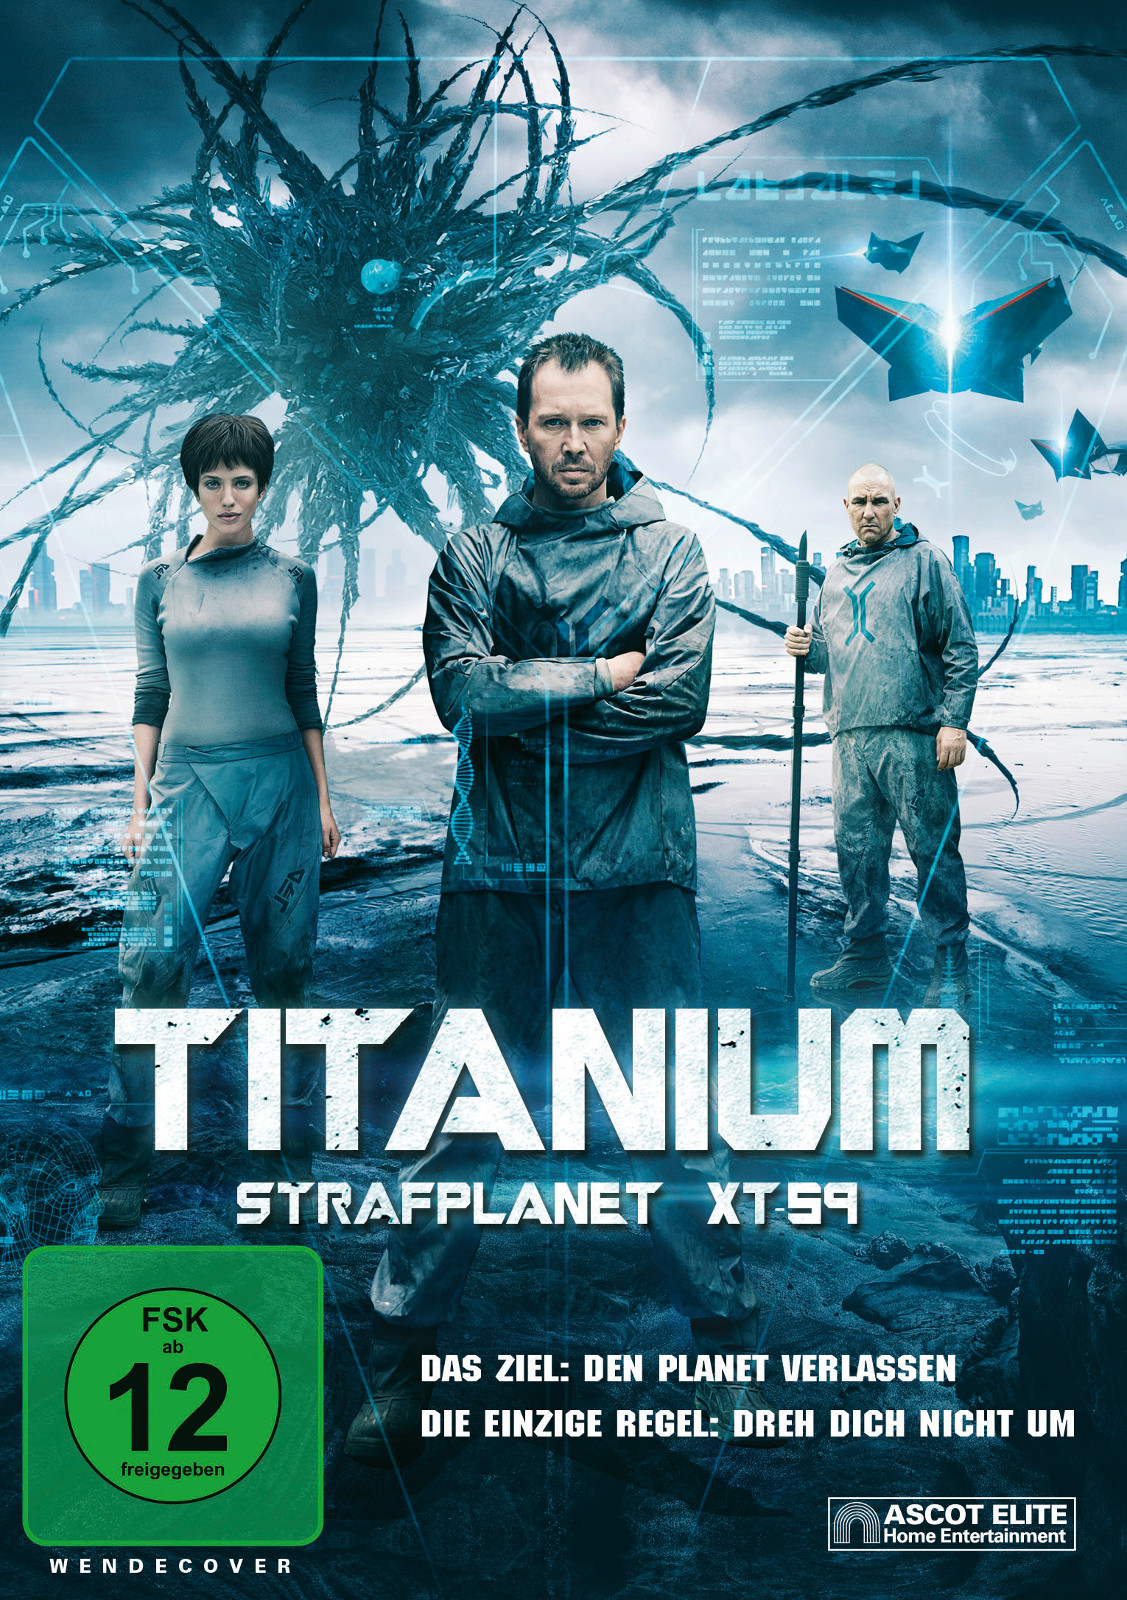 Titanium - Strafplanet Xt-59